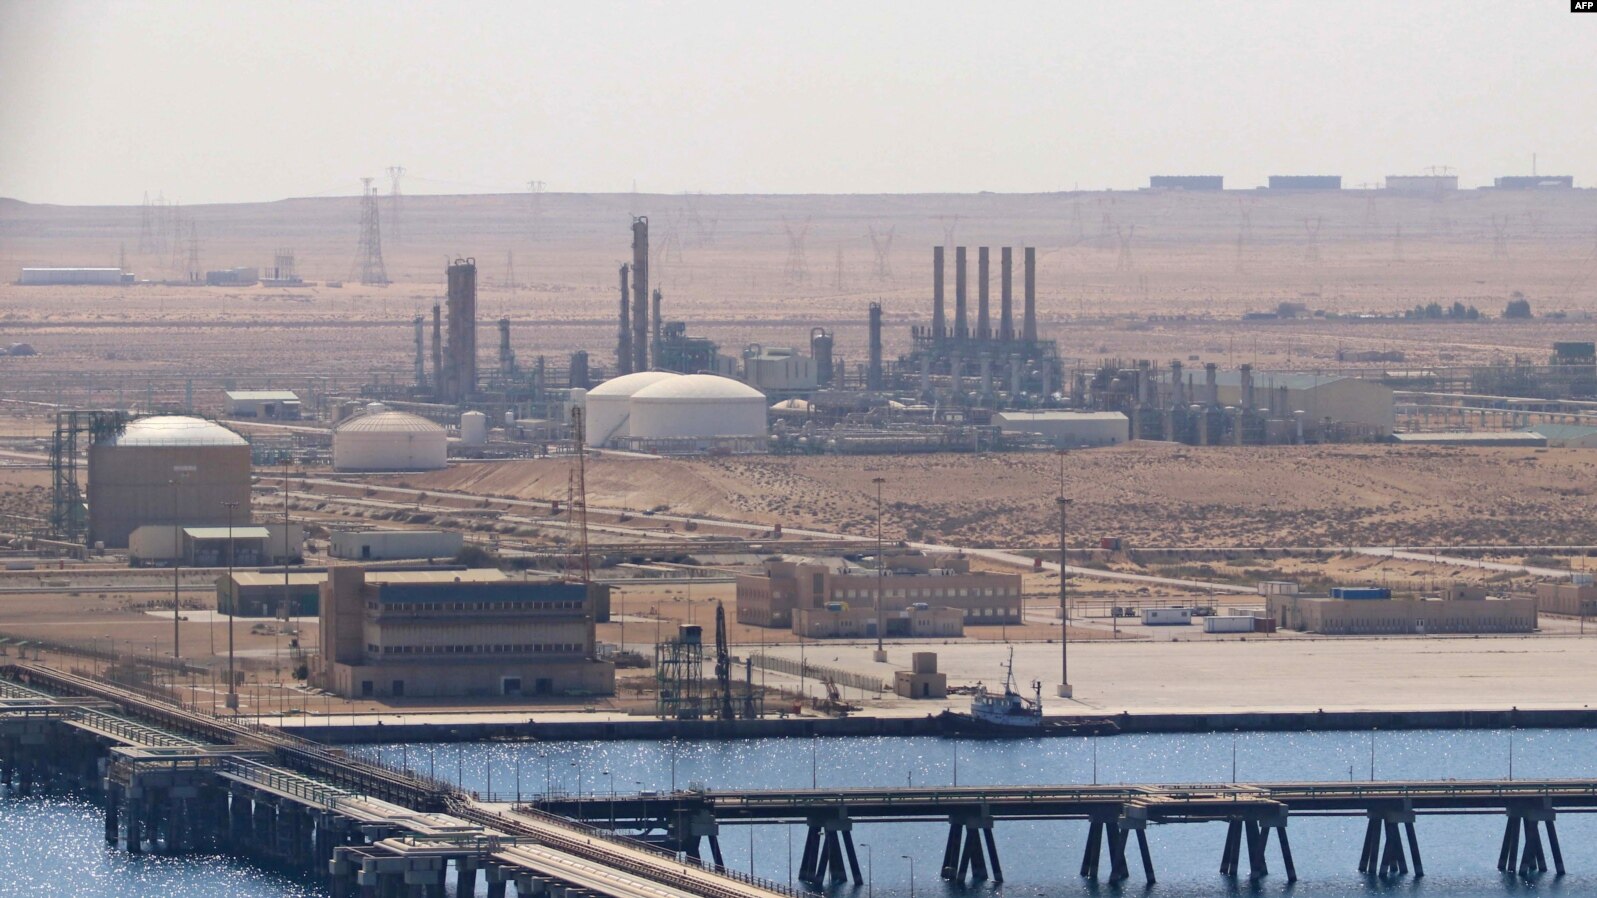 Reprise de l’exportation du pétrole libyen après des mois d’interruption